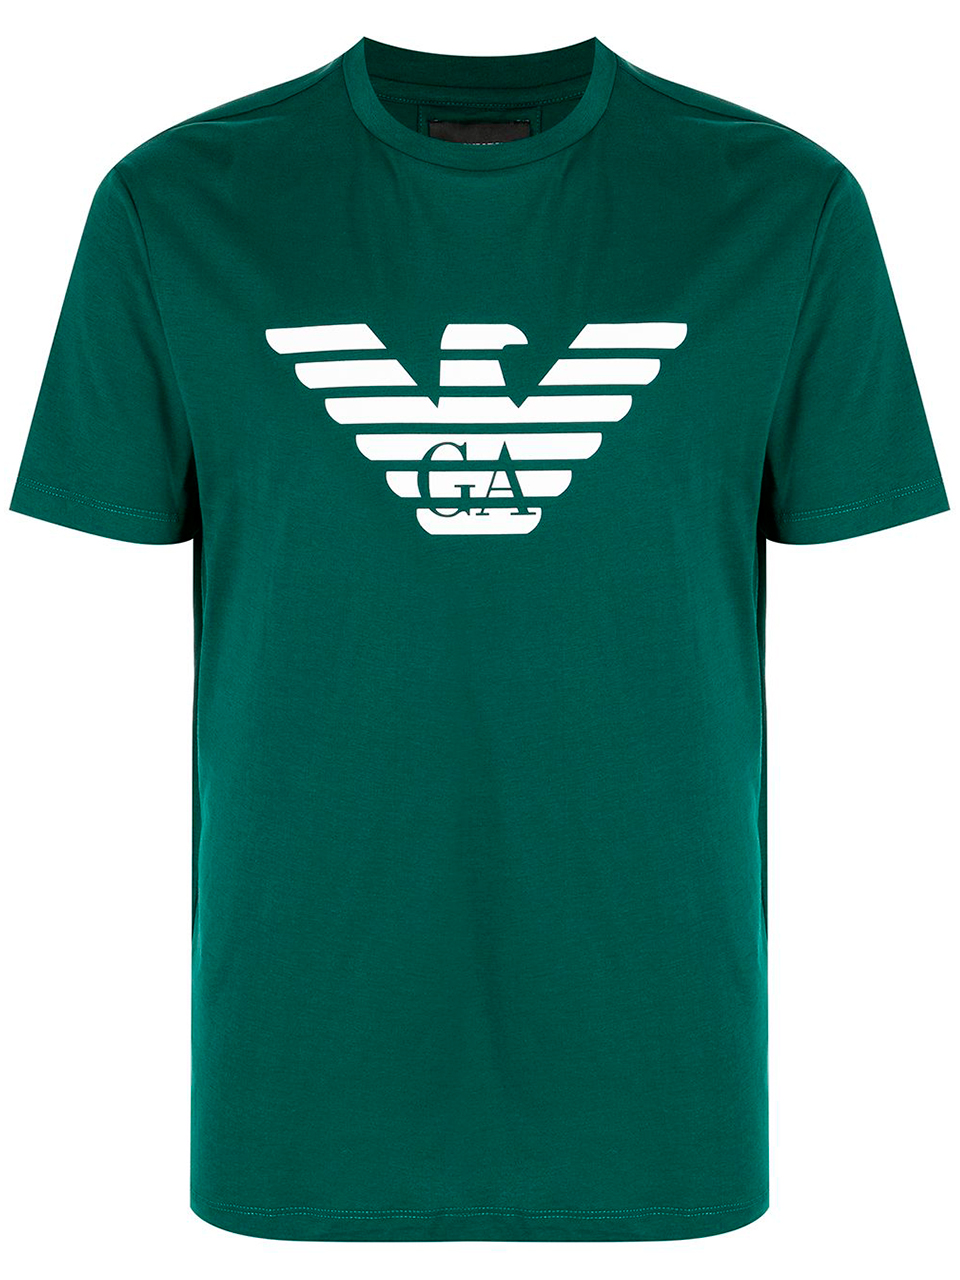 Imagem de: Camiseta Emporio Armani Verde com Estampa